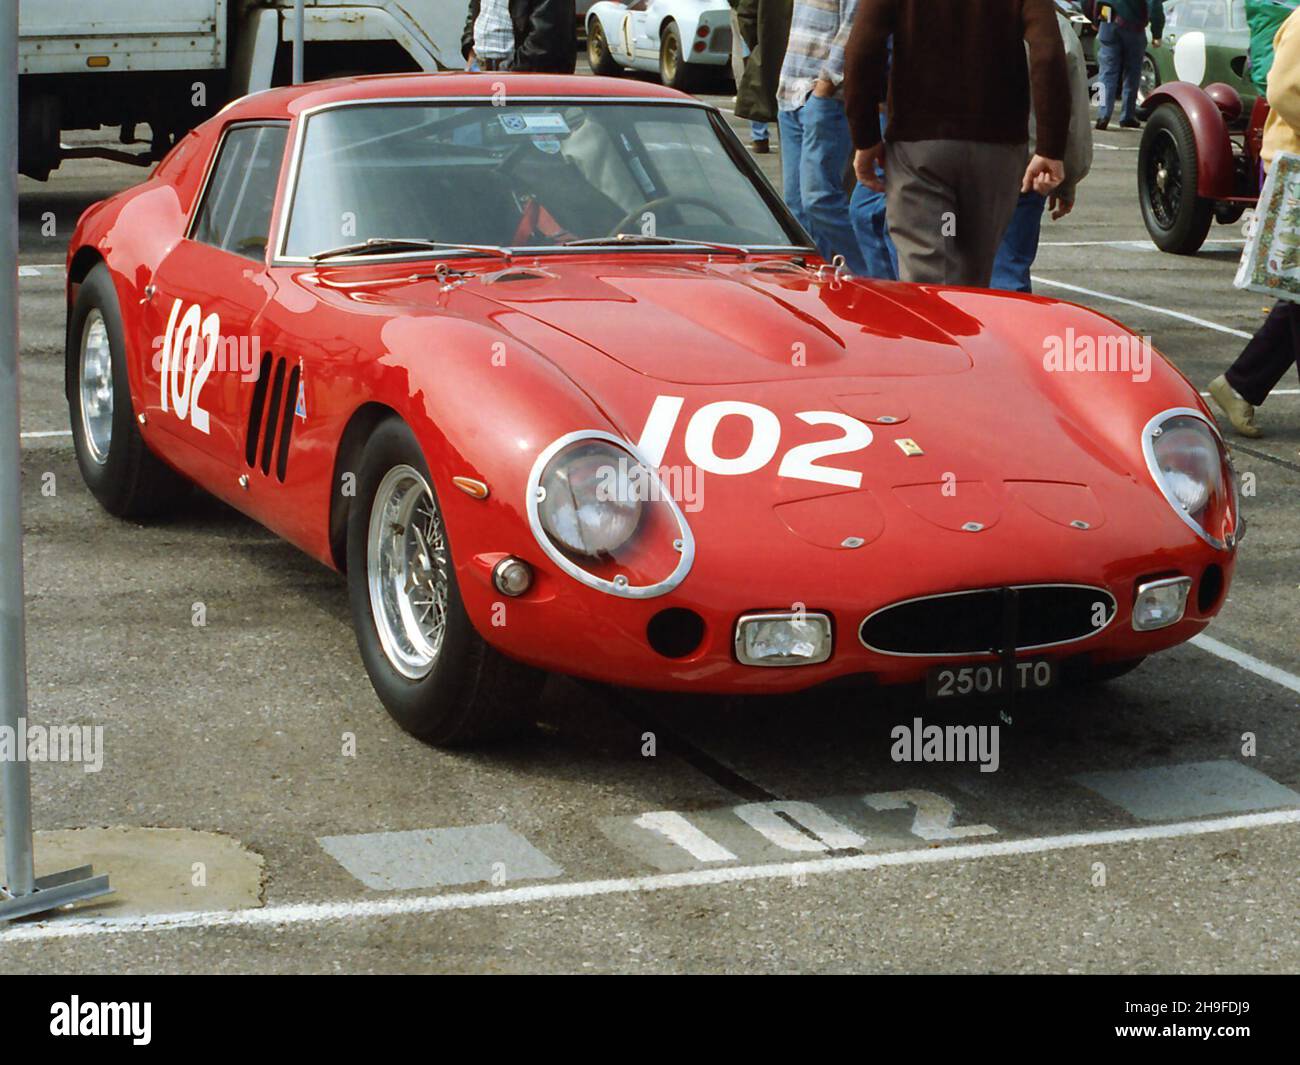 #102 le GTO Ferrari 250 de Nick Mason, à être conduit par Un Mason (Annette?)Au Goodwood Festival of Speed, le 21st juin 1996.Photographie prise le vendredi. Avant la pratique. Banque D'Images